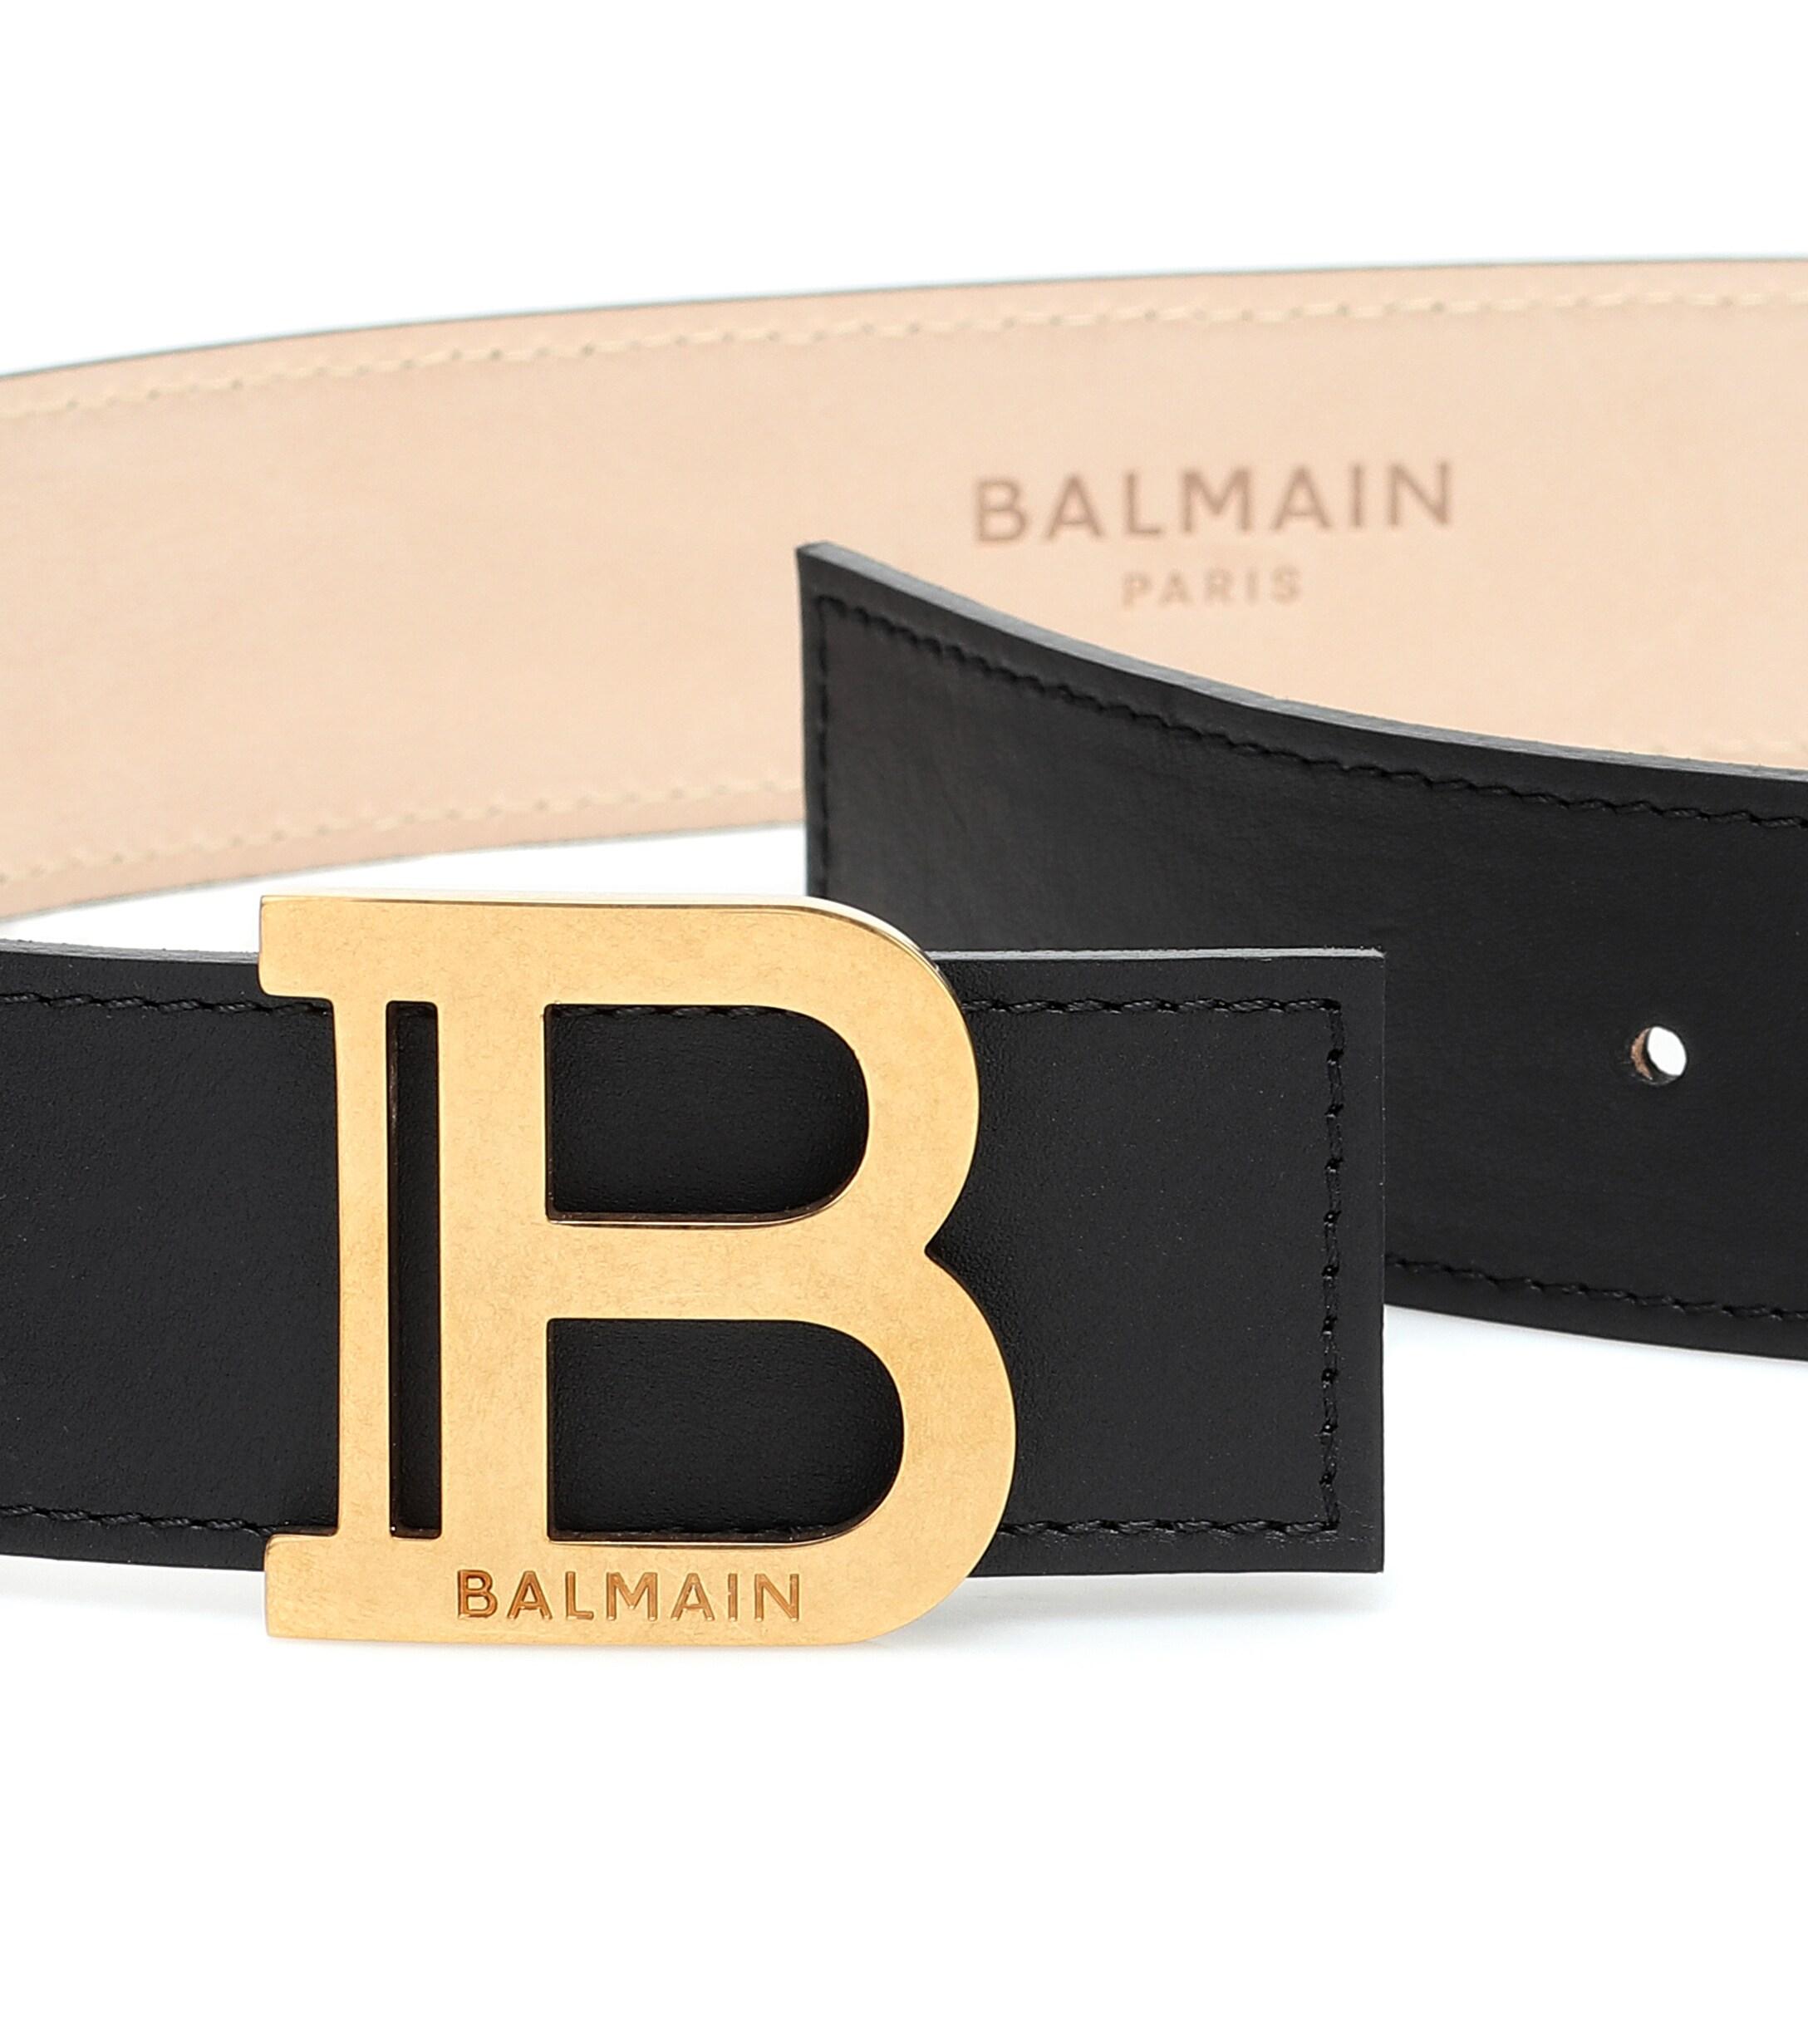 Balmain B-belt Leather Belt in Black - Lyst